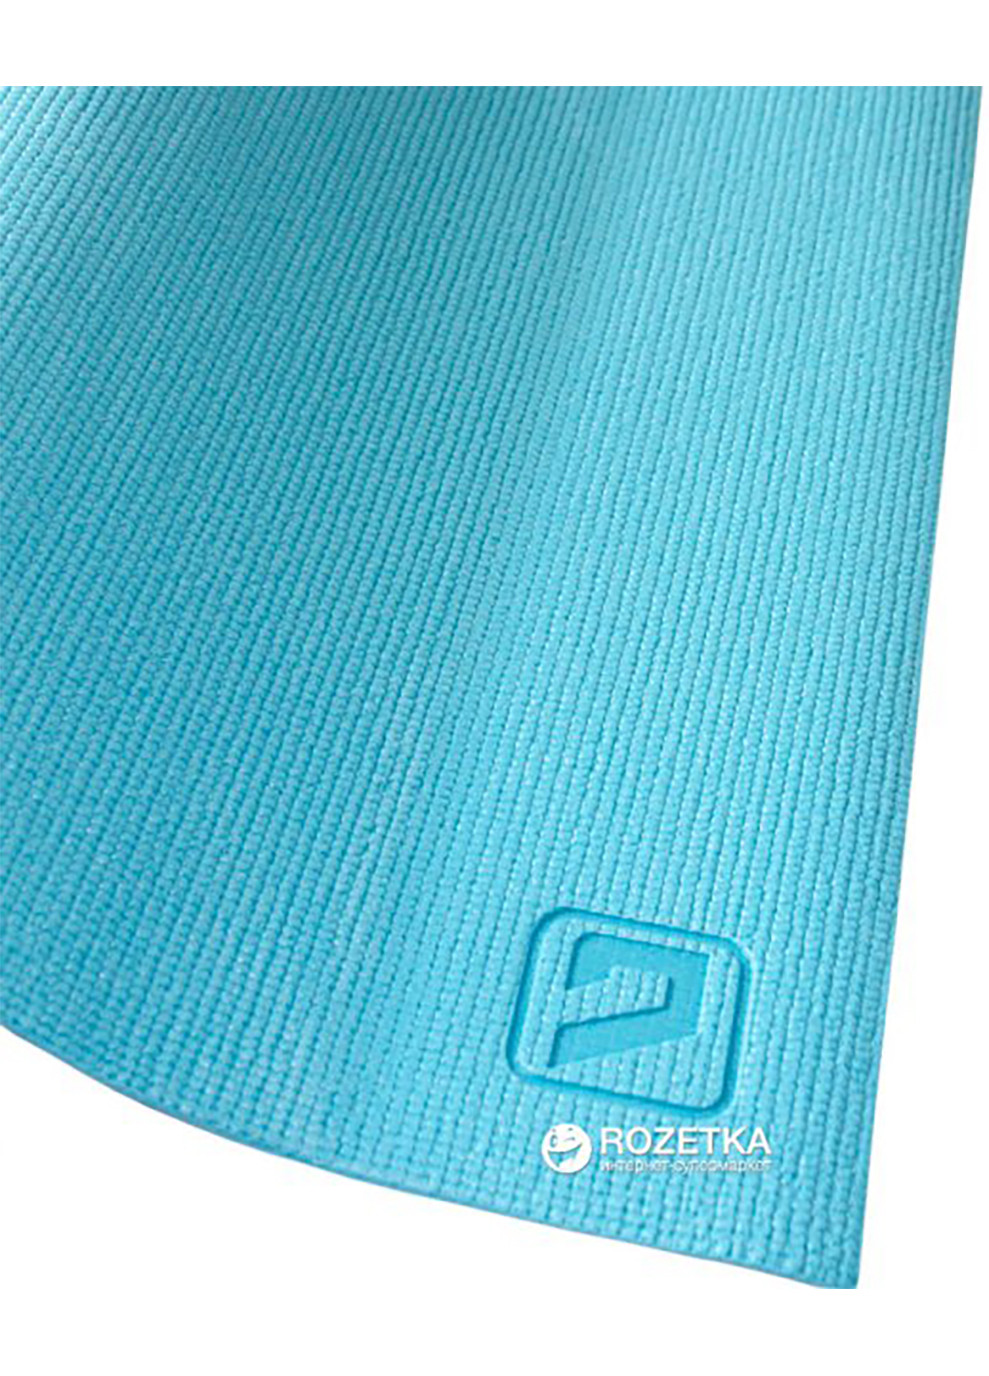 Коврик для йоги PVC YOGA MAT синий 173x61x0.4см LiveUp (258131900)